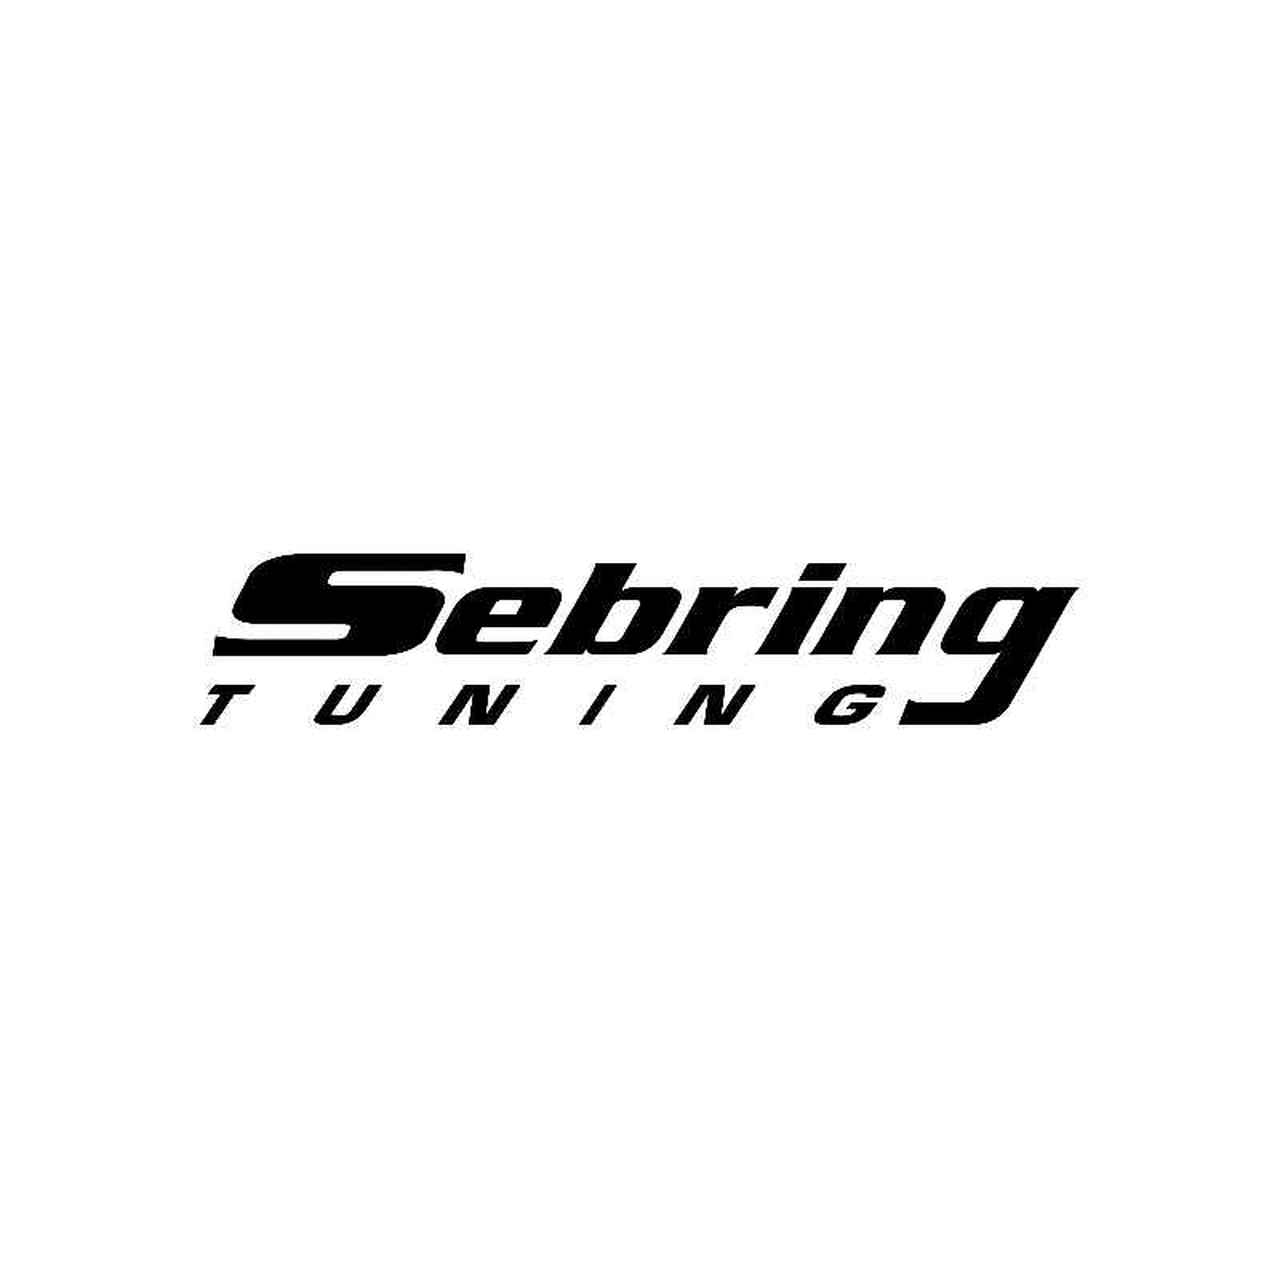 Tuning Logo - Sebring Tuning Logo Jdm Decal